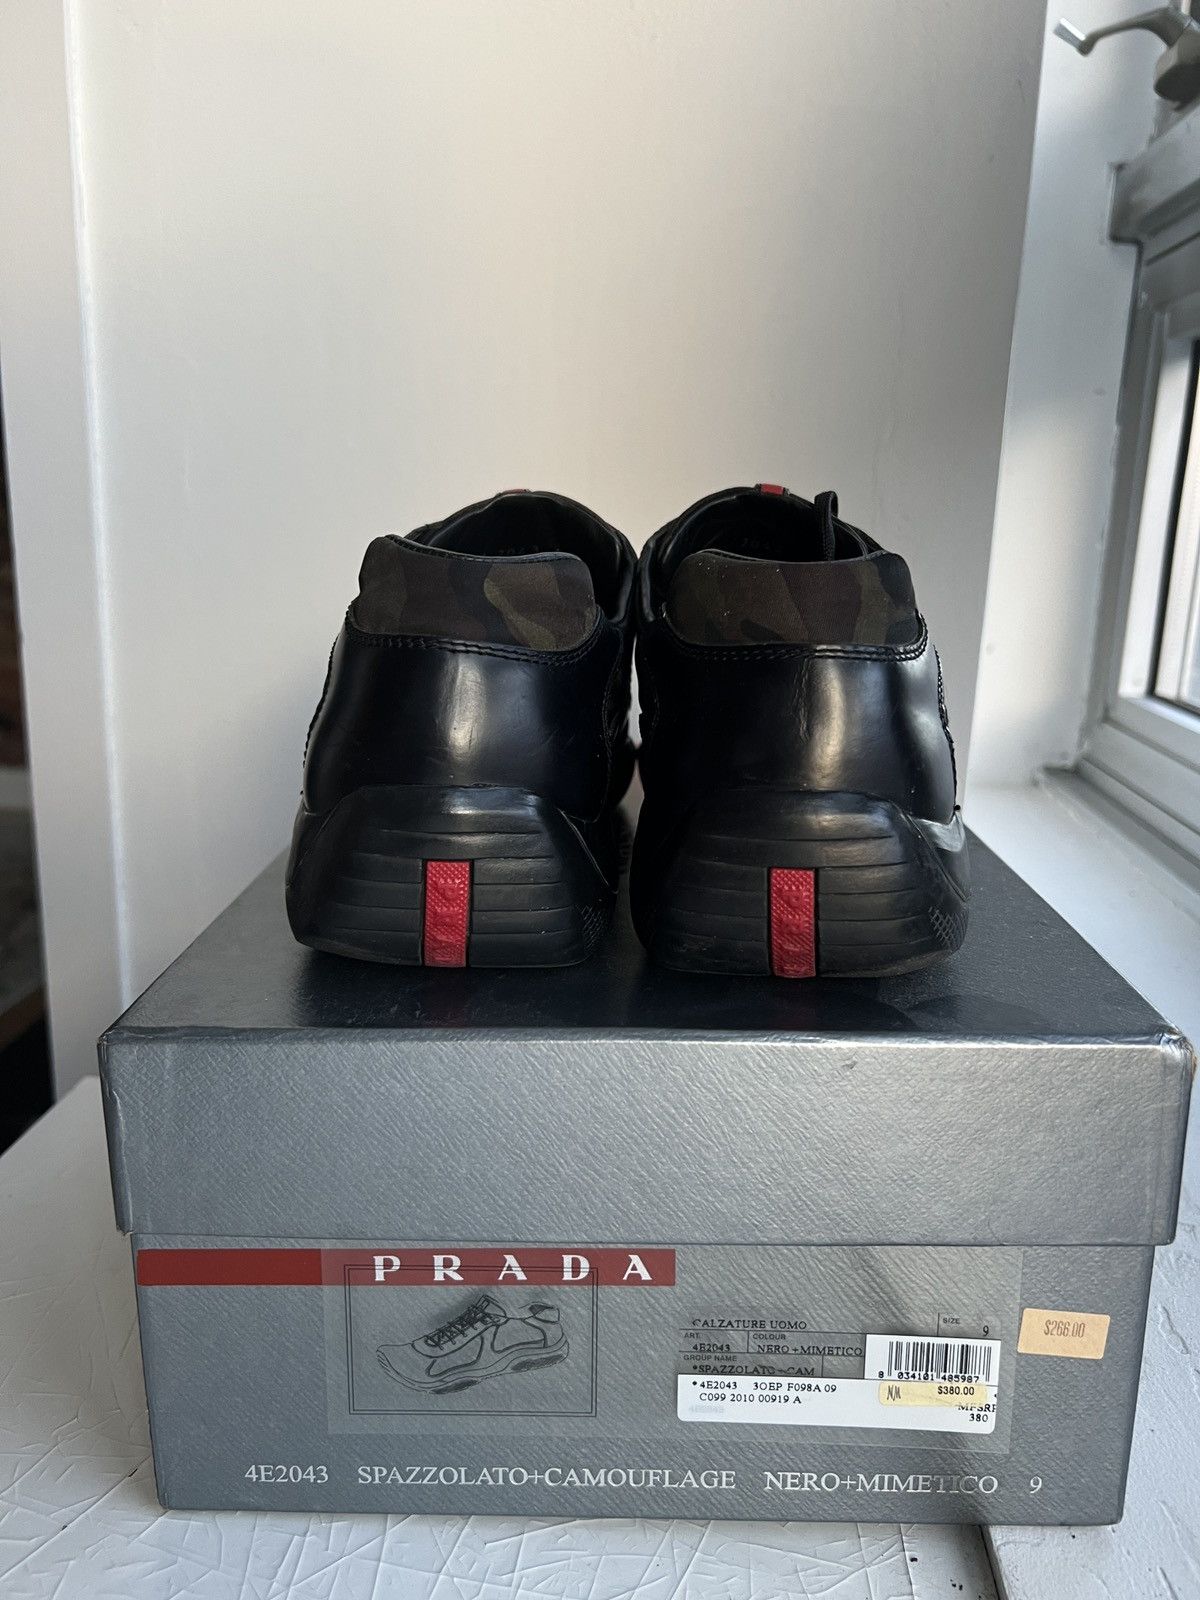 Prada *Rare* Black + Camo Prada Sport World Cup Leather Sneakers Size US 10 / EU 43 - 2 Preview